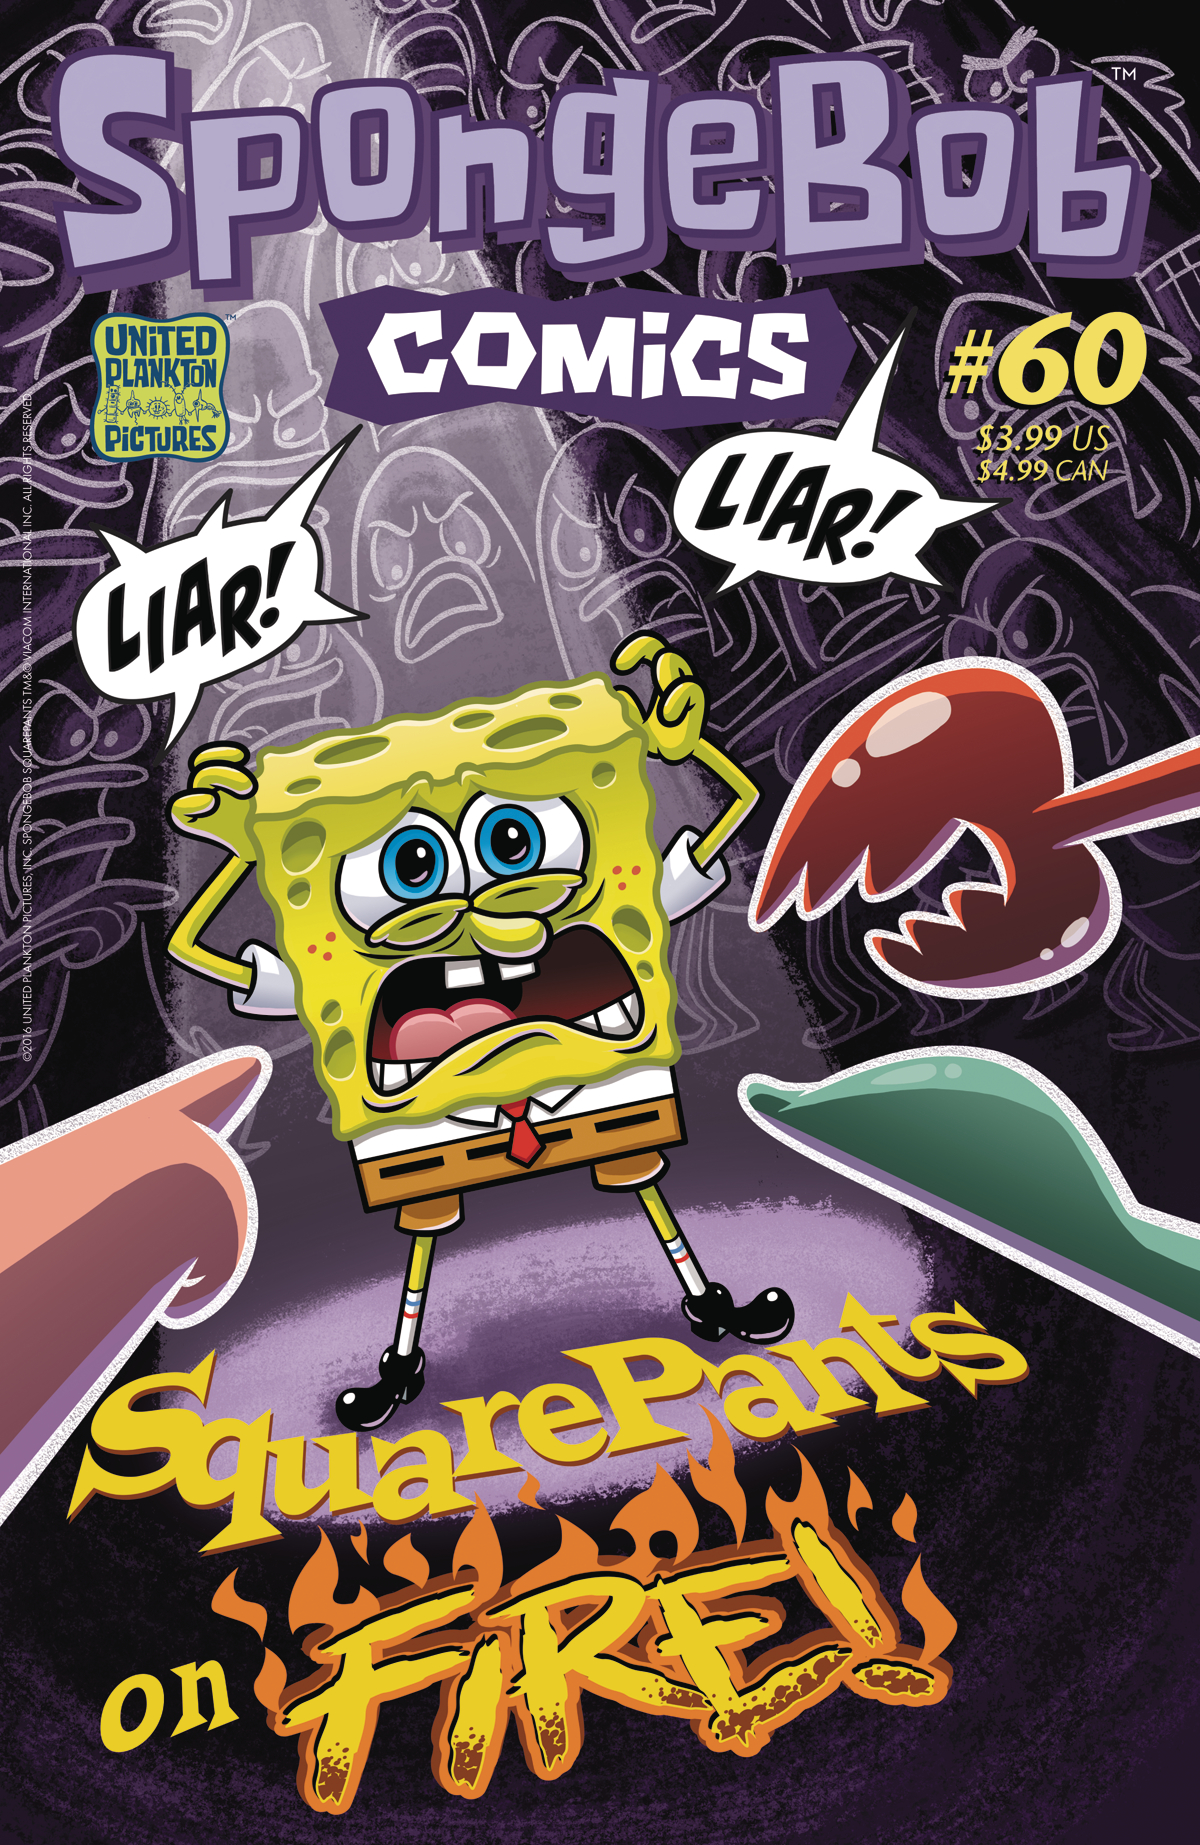 SPONGEBOB COMICS #60